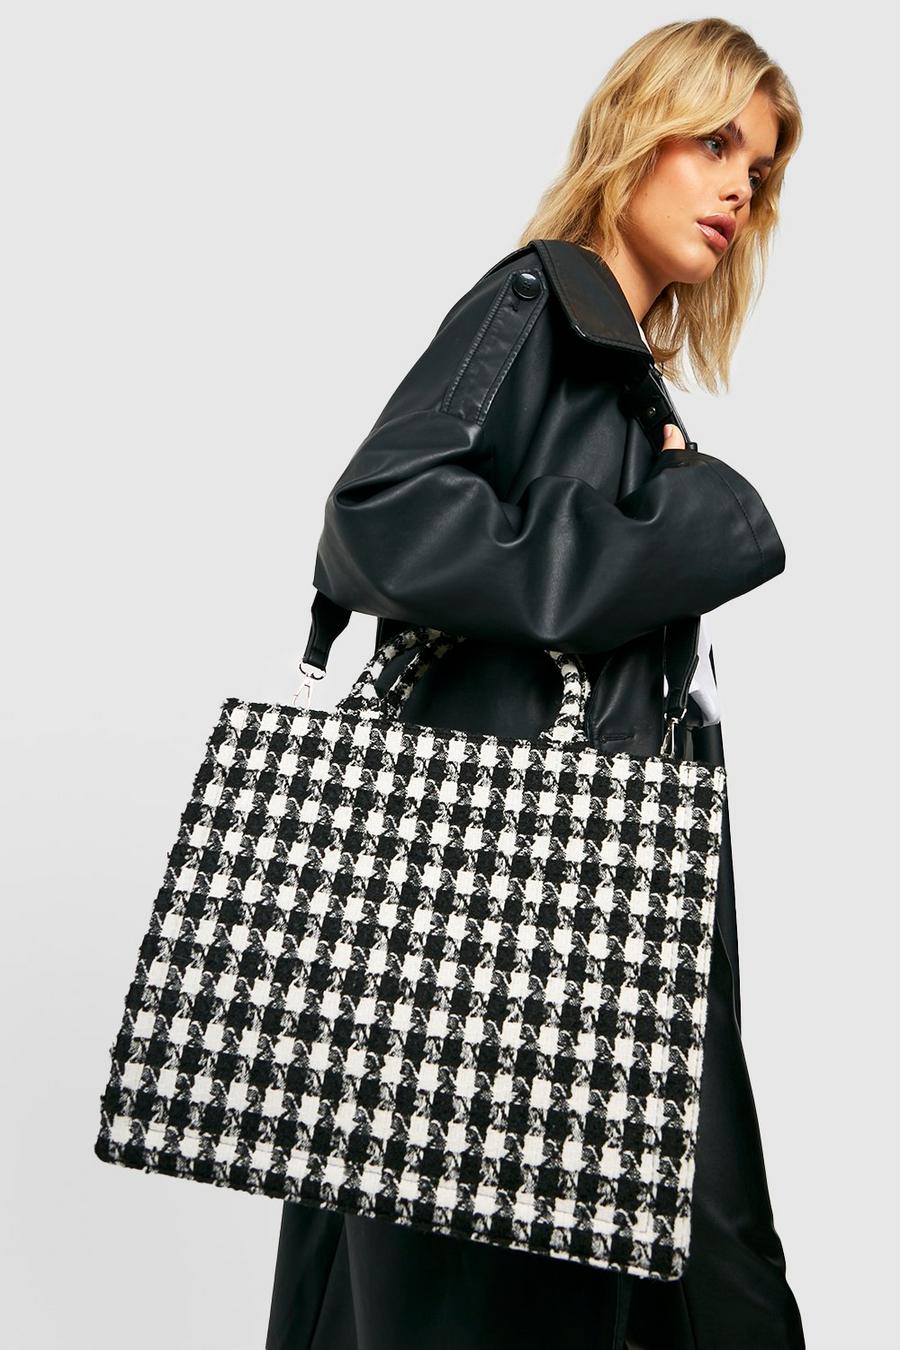 Boohoo Womens Scarf Detail Mini Tote Bag - Black - One Size